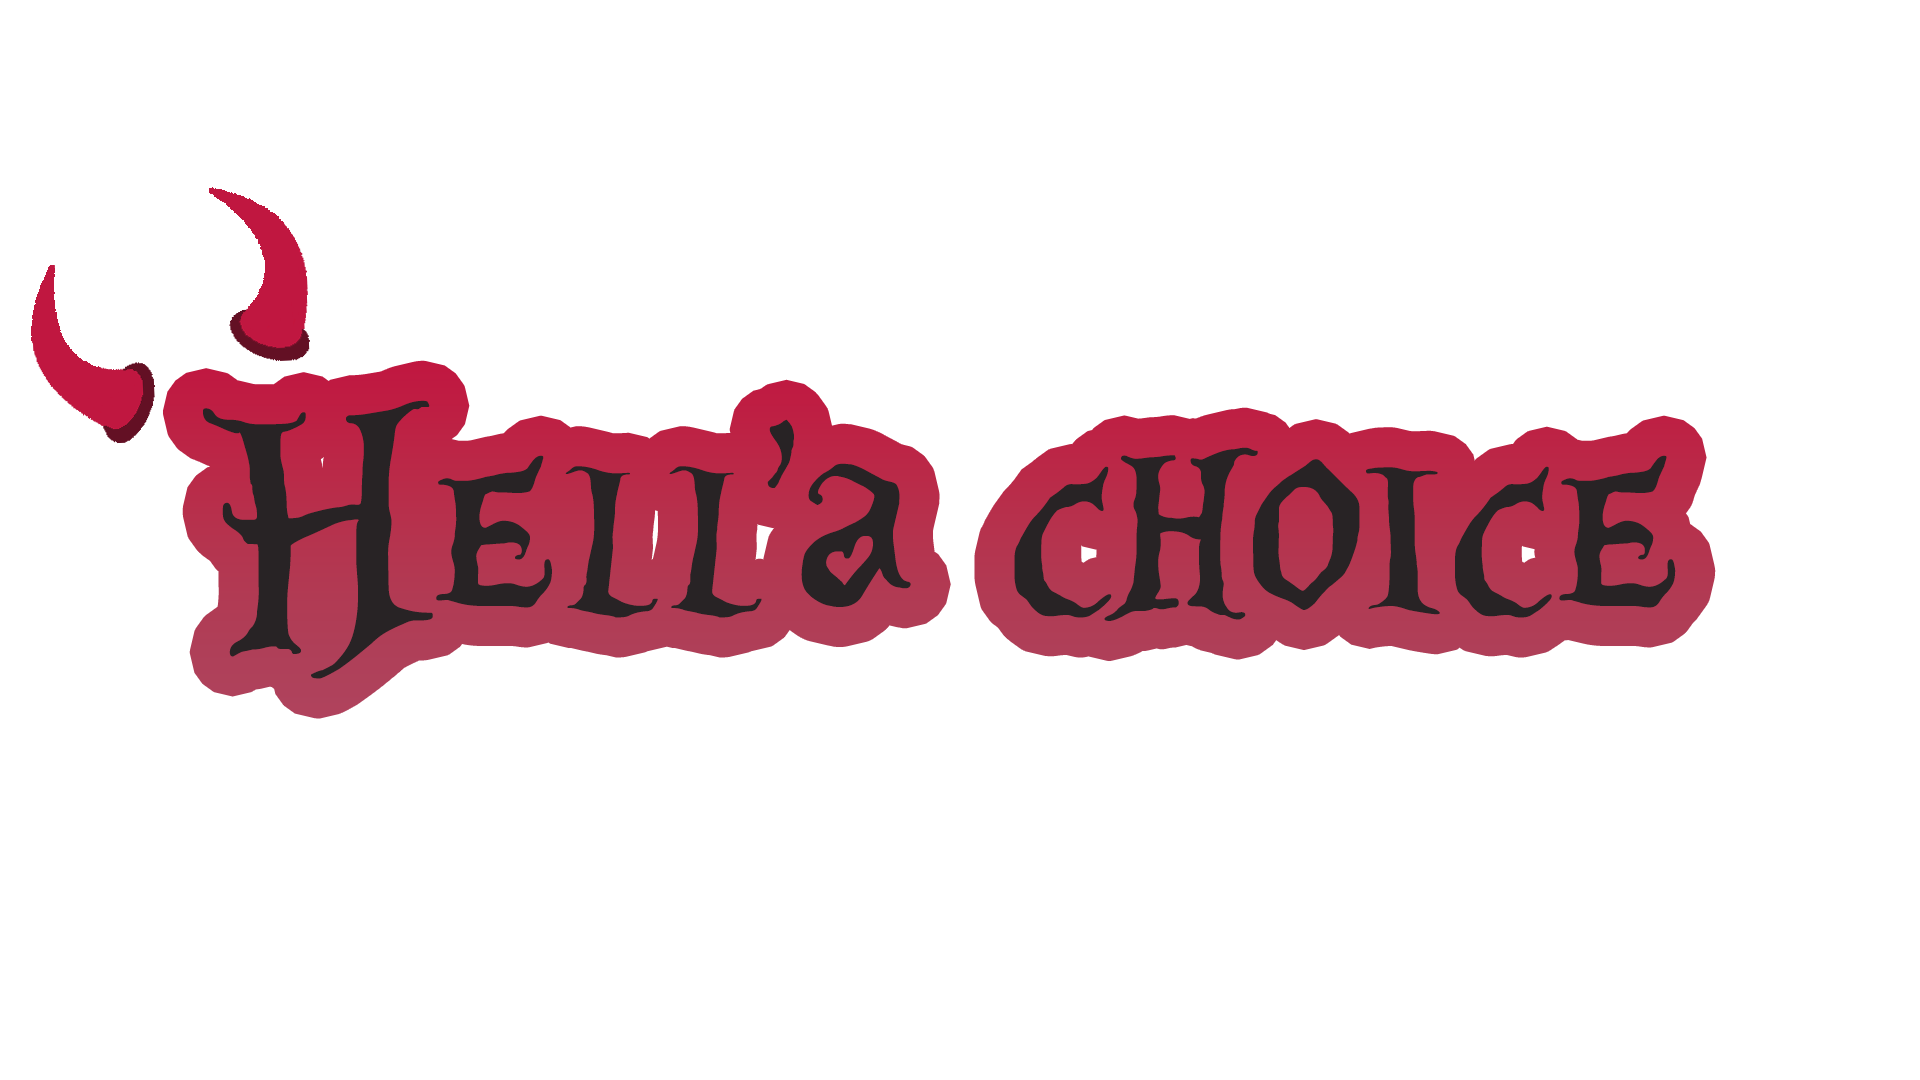 Hell'a Choice